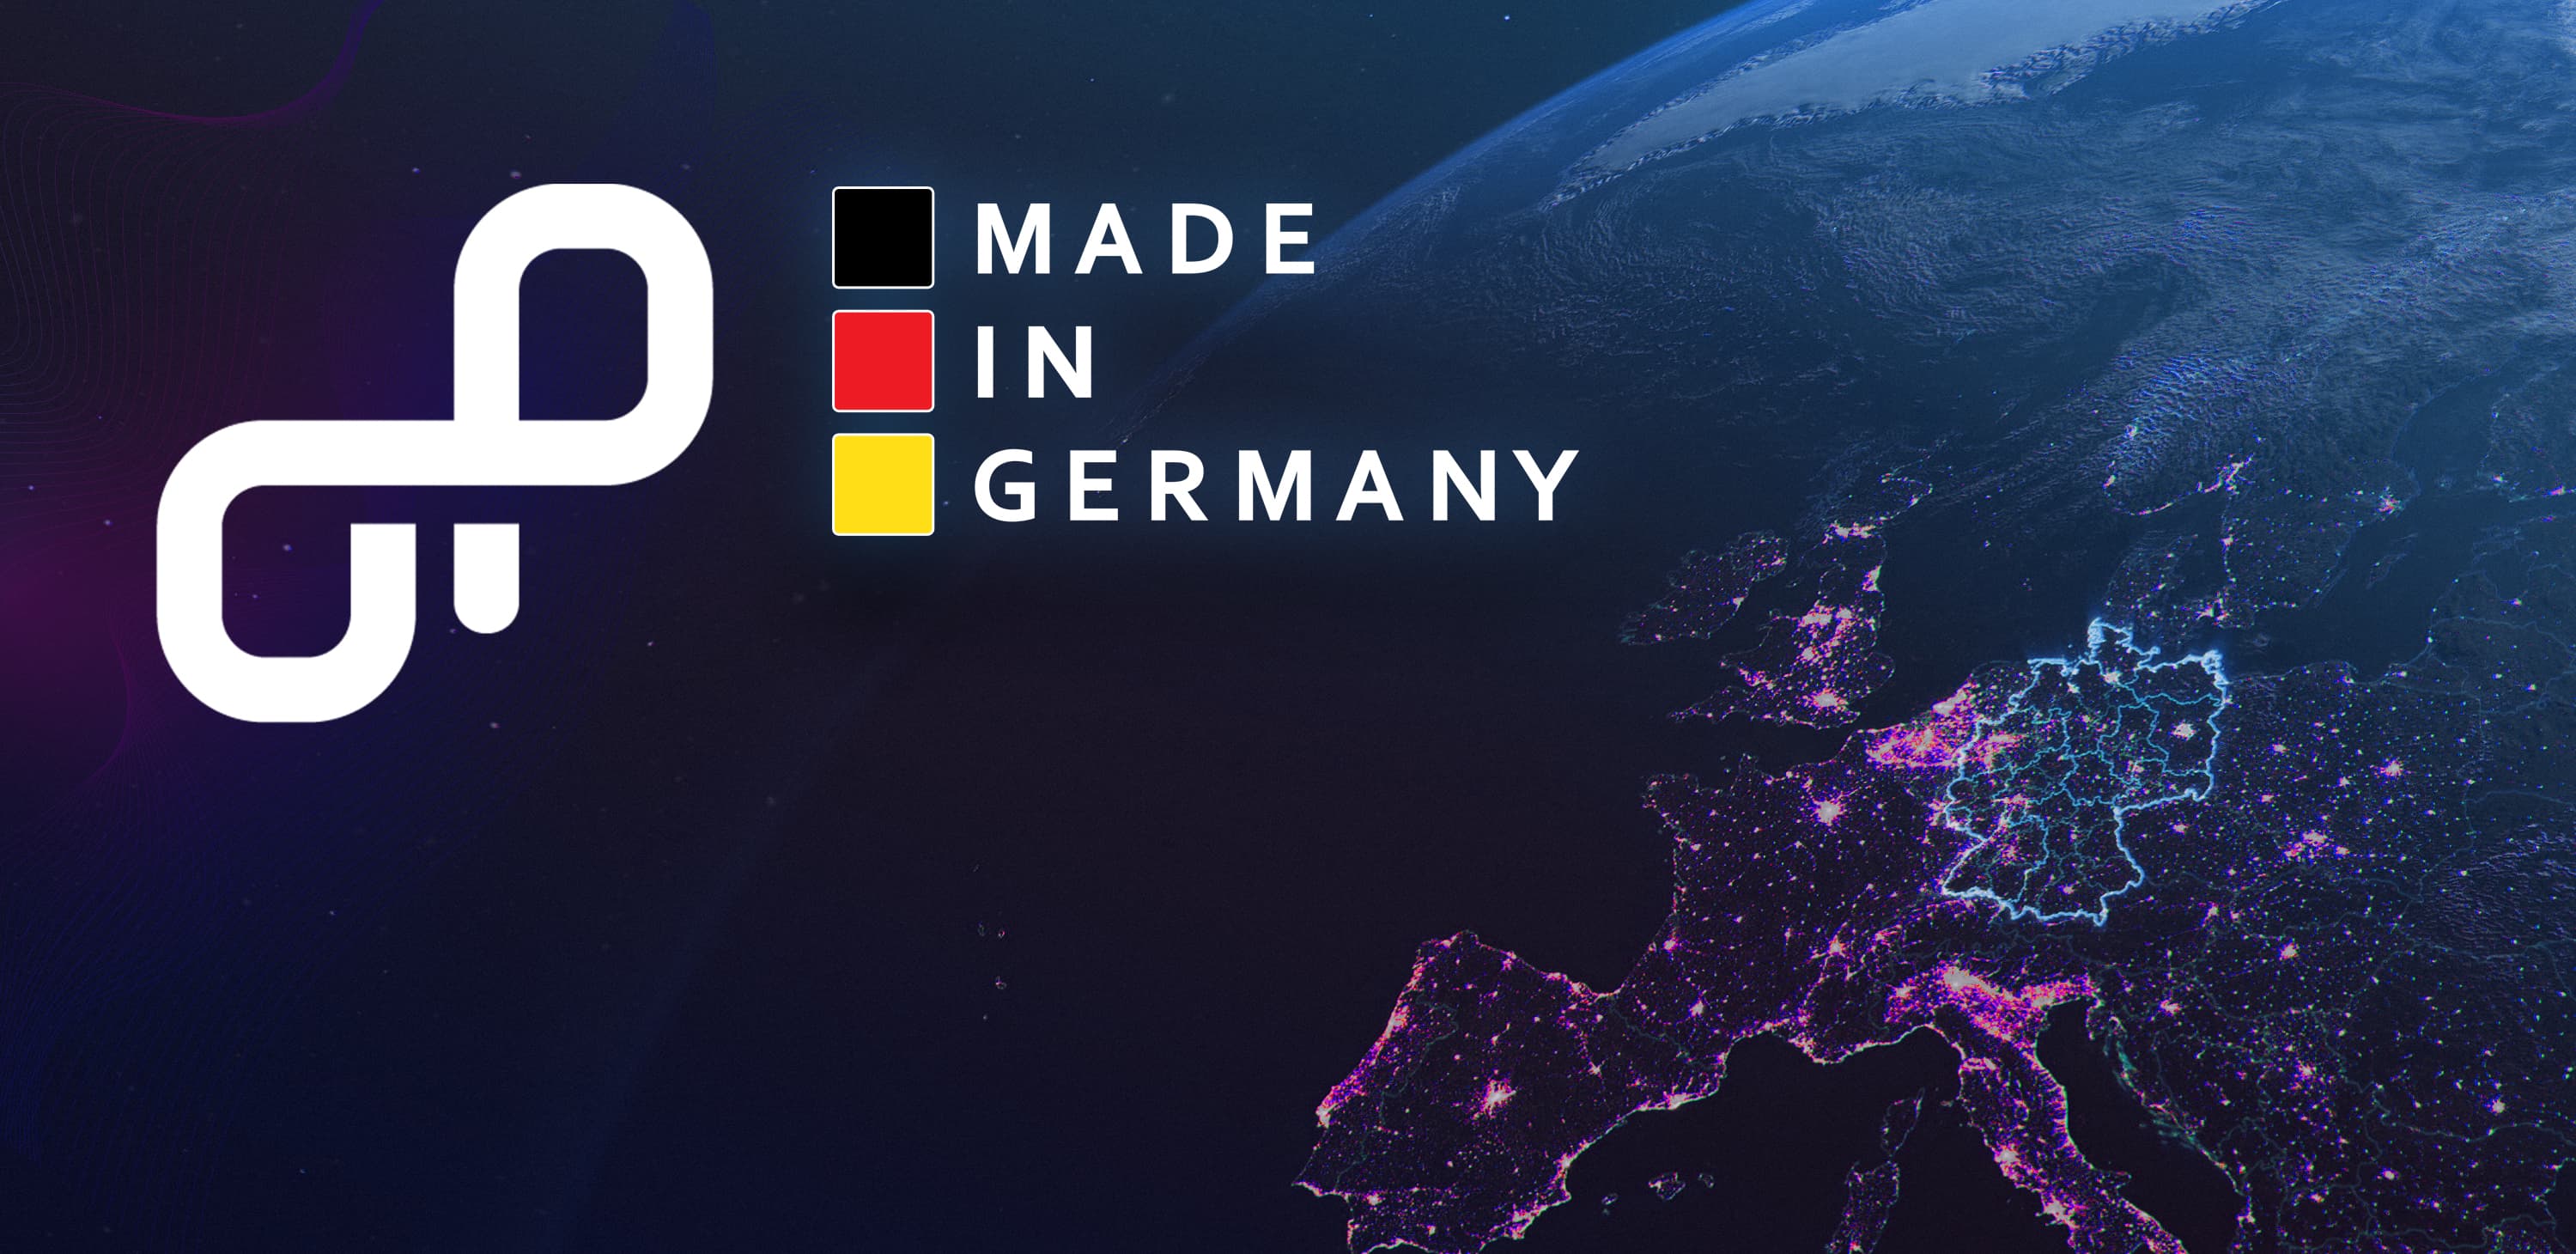 OpenProject und Made in Germany auf blauem Hintergrund mit Weltkarte